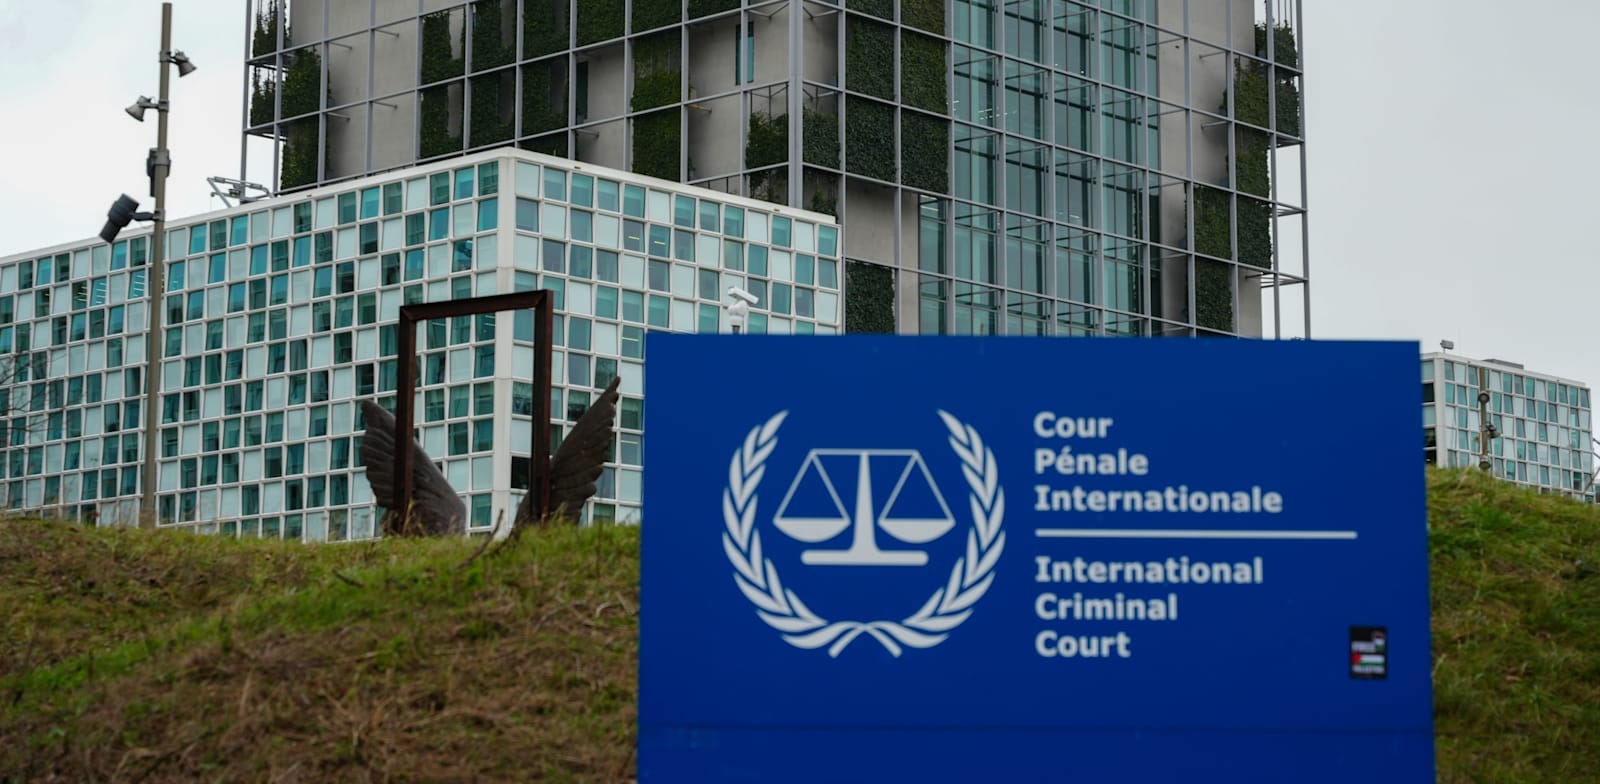 בניין בית הדין הפלילי הבינלאומי בהאג / צילום: Shutterstock